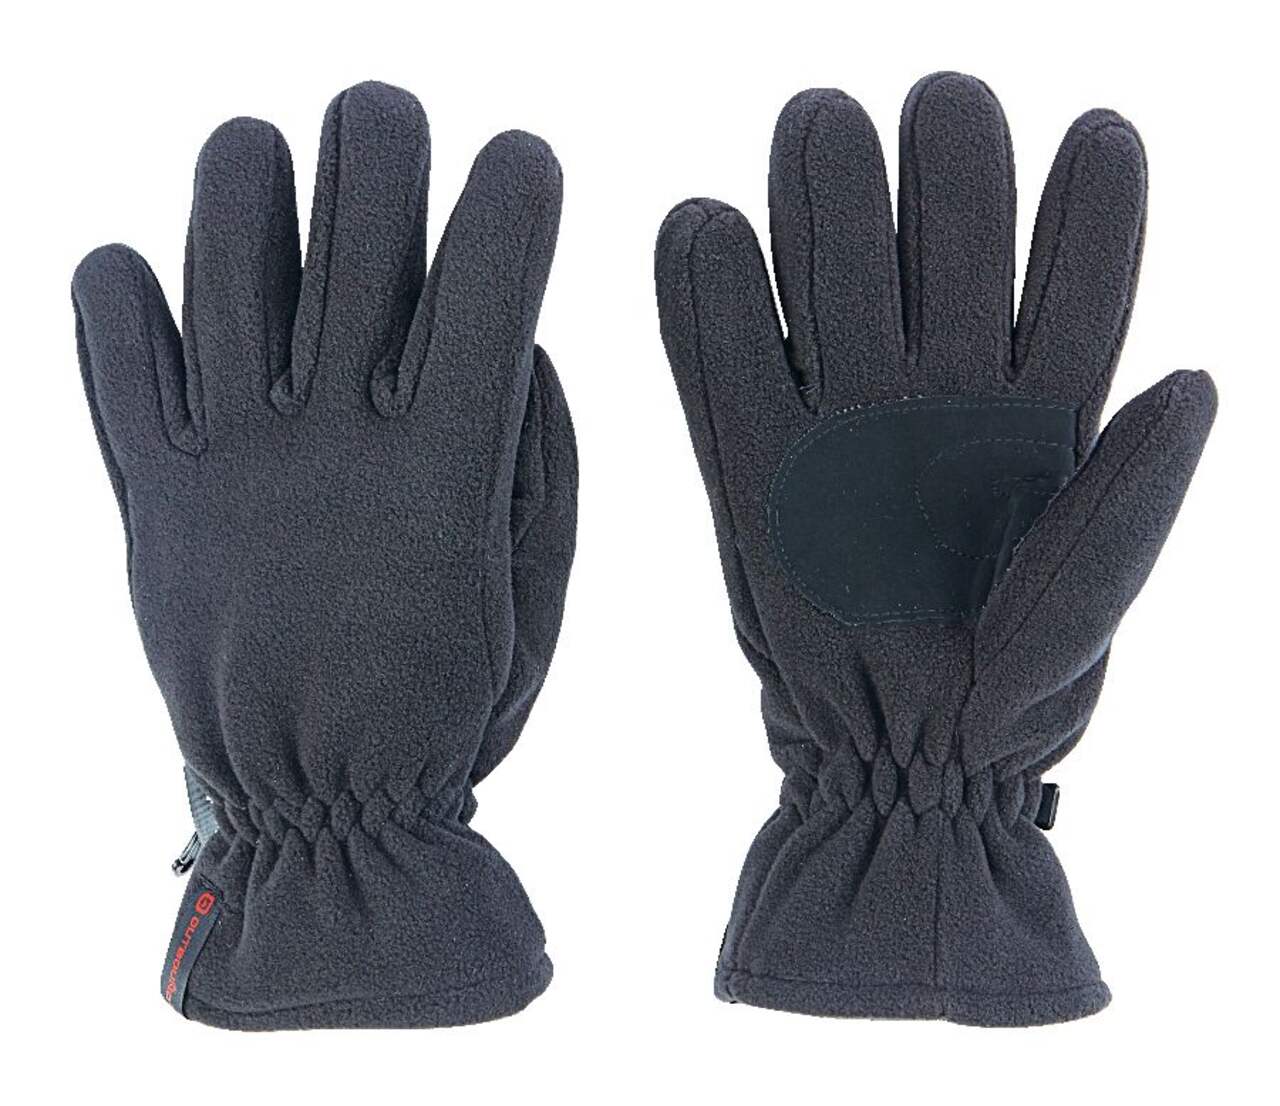 Kombi Men's Thermal Fleece Lined Casual Wool Winter Gloves Warm